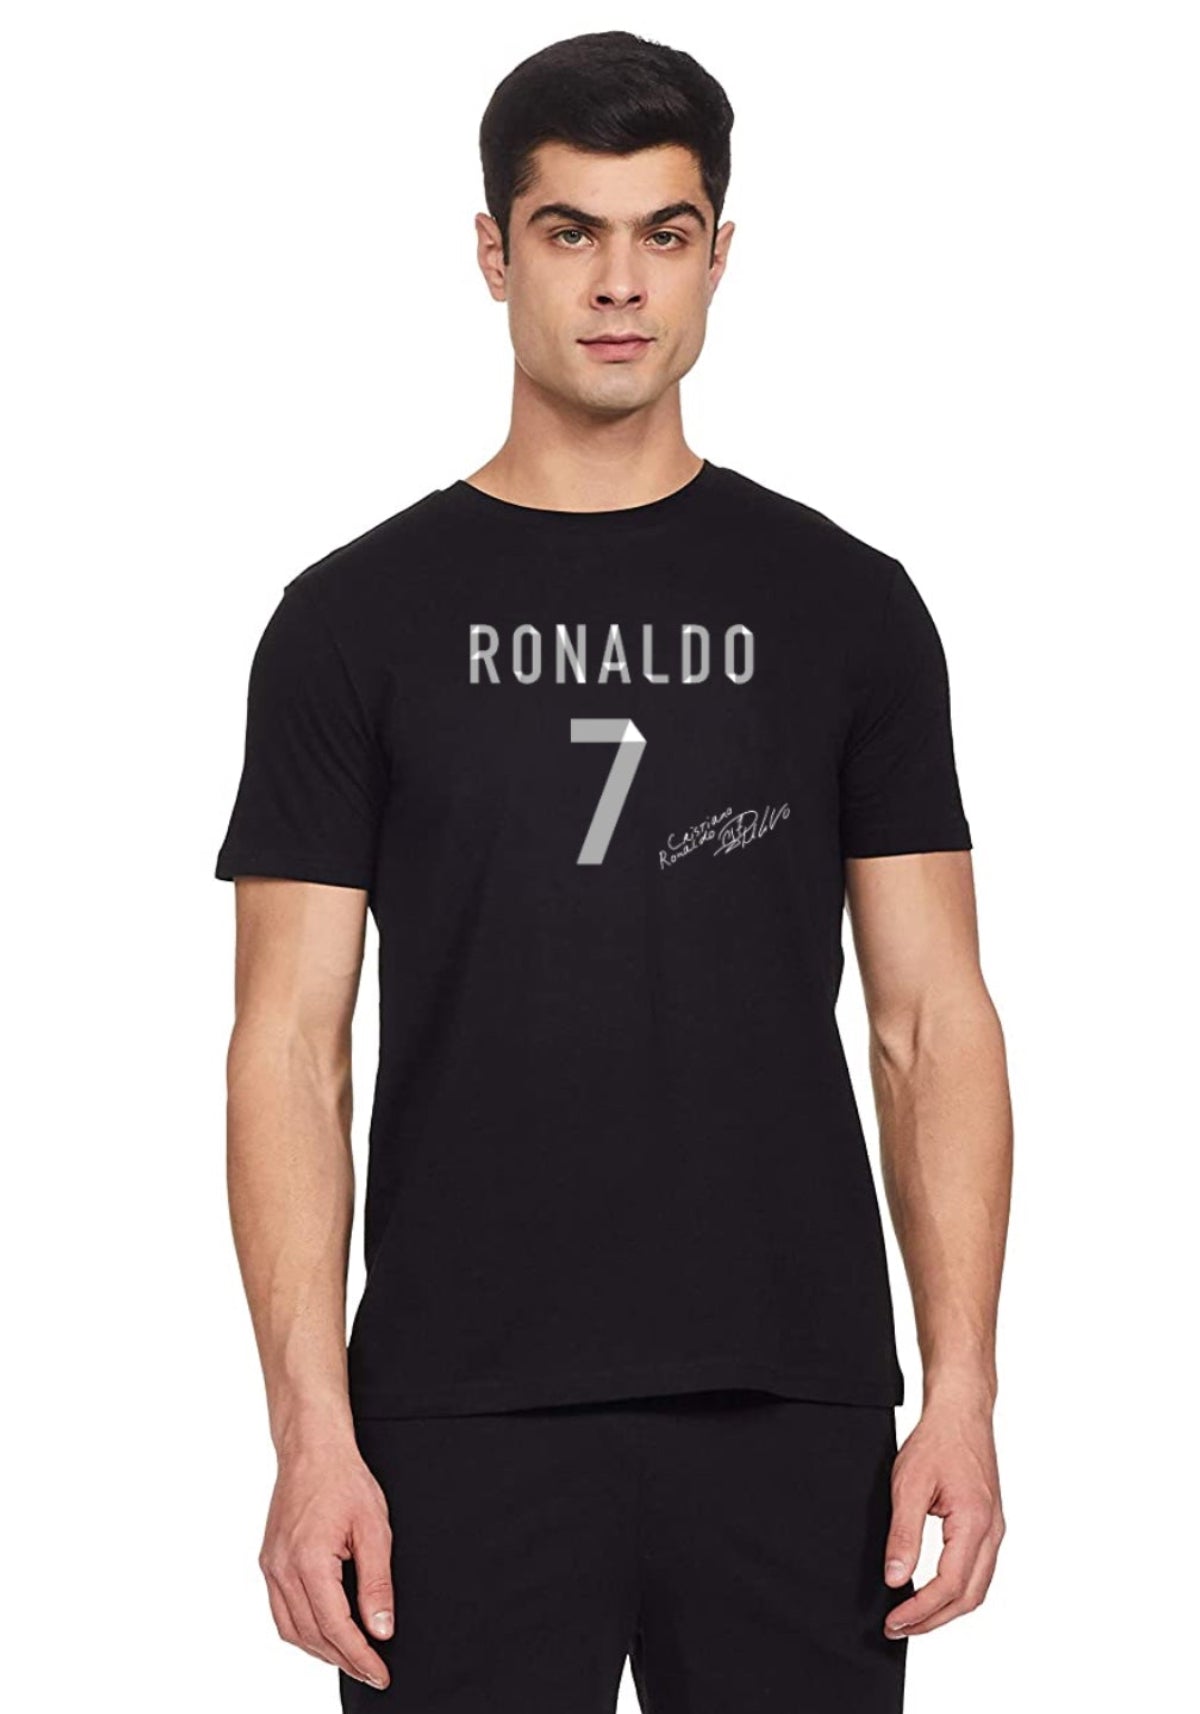 Ronaldo no. 7 Tshirt